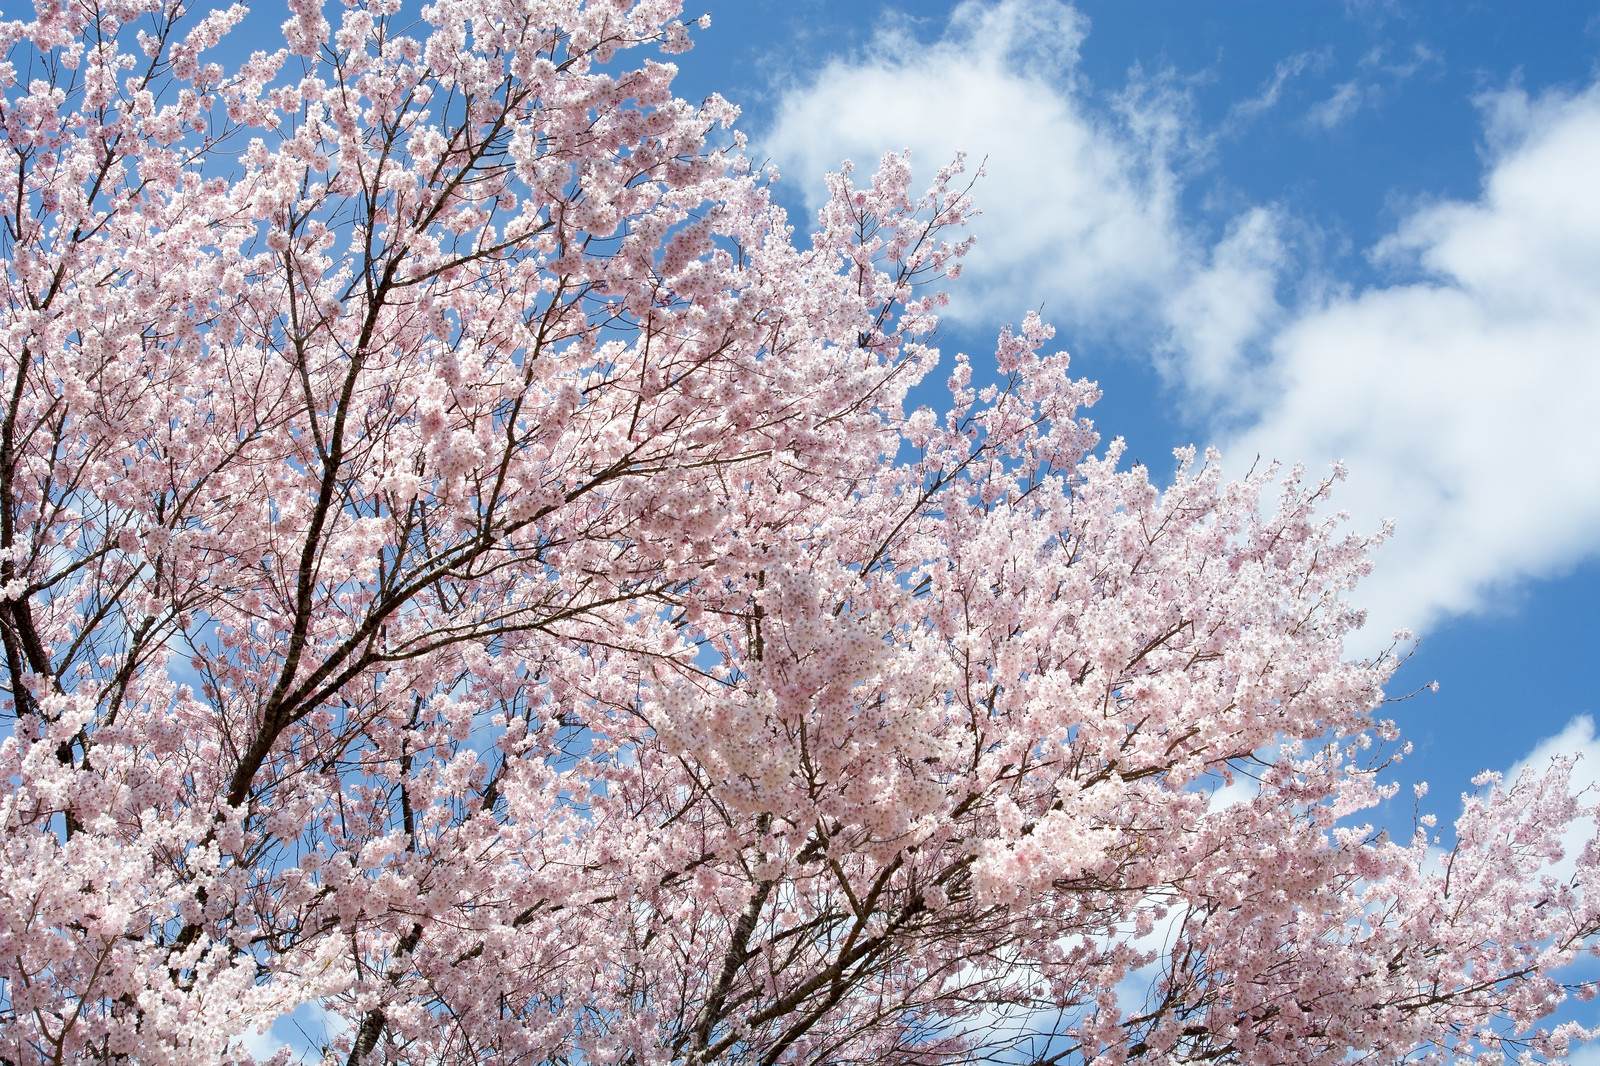 【春を表現する言葉一覧】季語 - 季節の美しい言葉